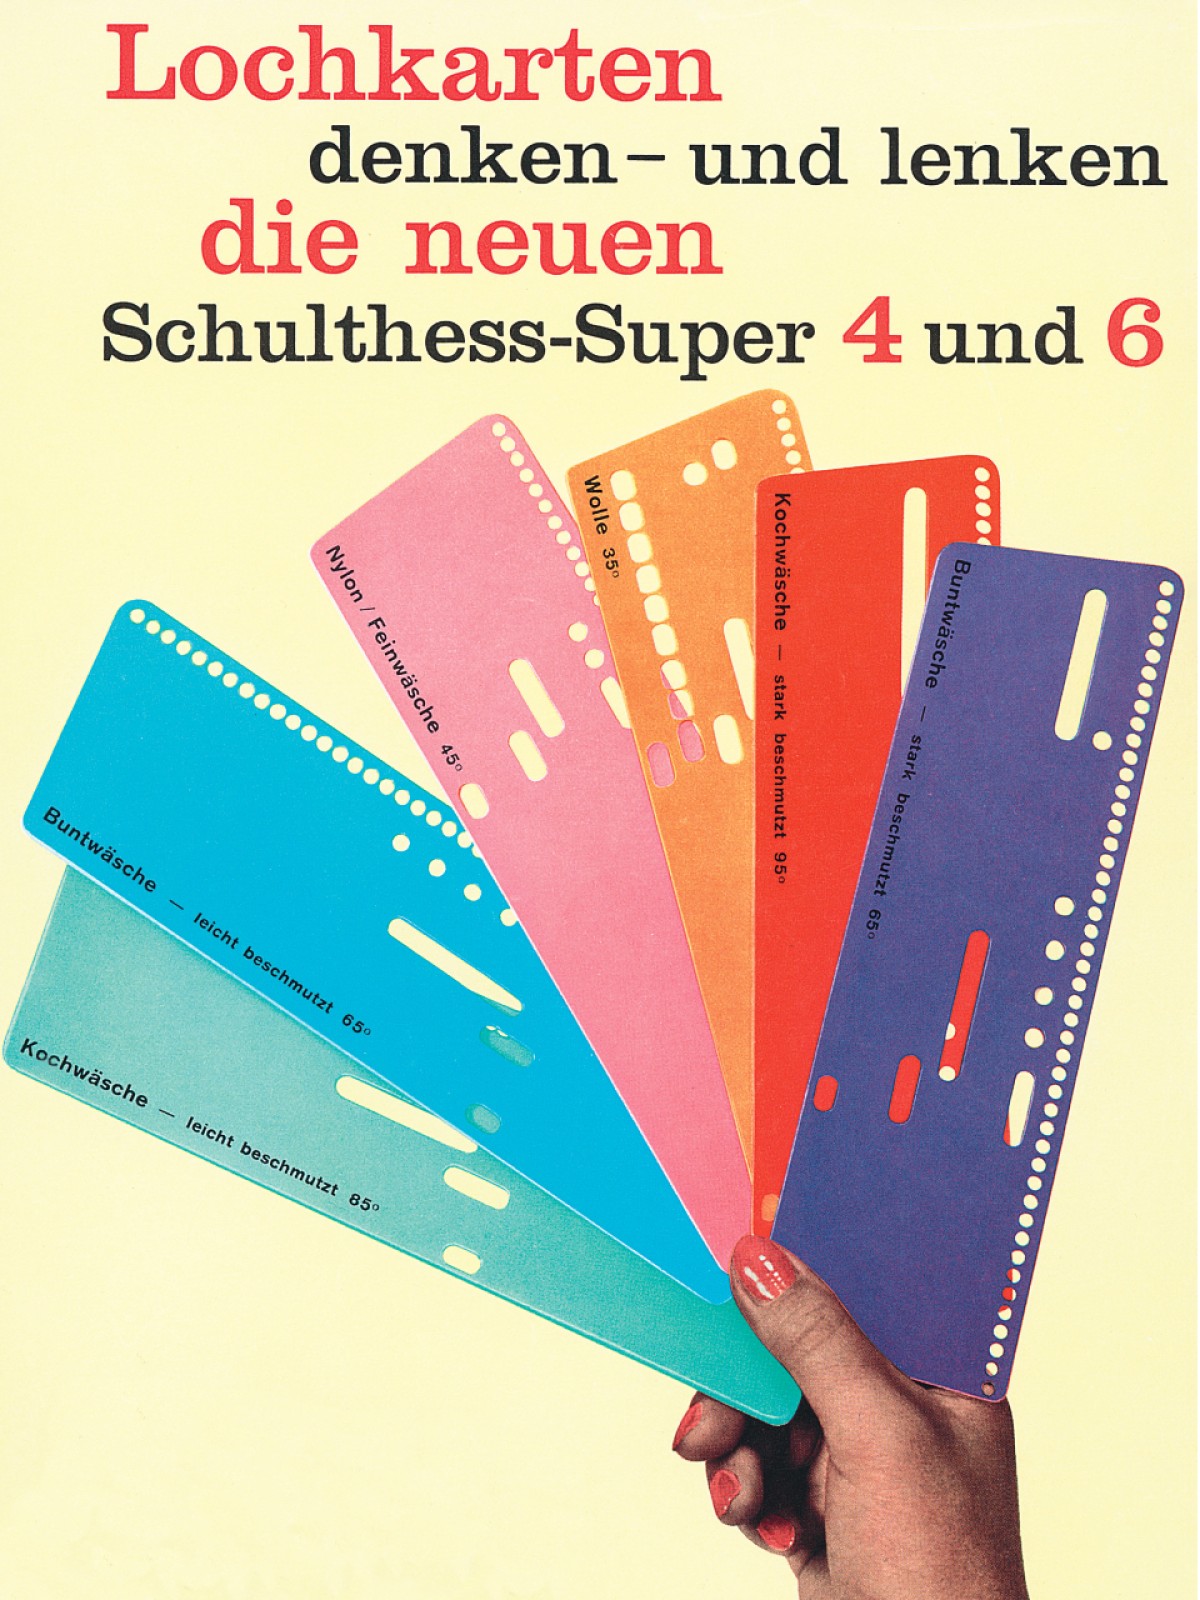 Werbegrafik für „Schulthess Super 4 und 6“, um 1970 Schulthess Maschinen, Wien, Archiv: Werbegrafik für „Schulthess Super 4 und 6“, um 1970
Schulthess Maschinen, Wien, Archiv